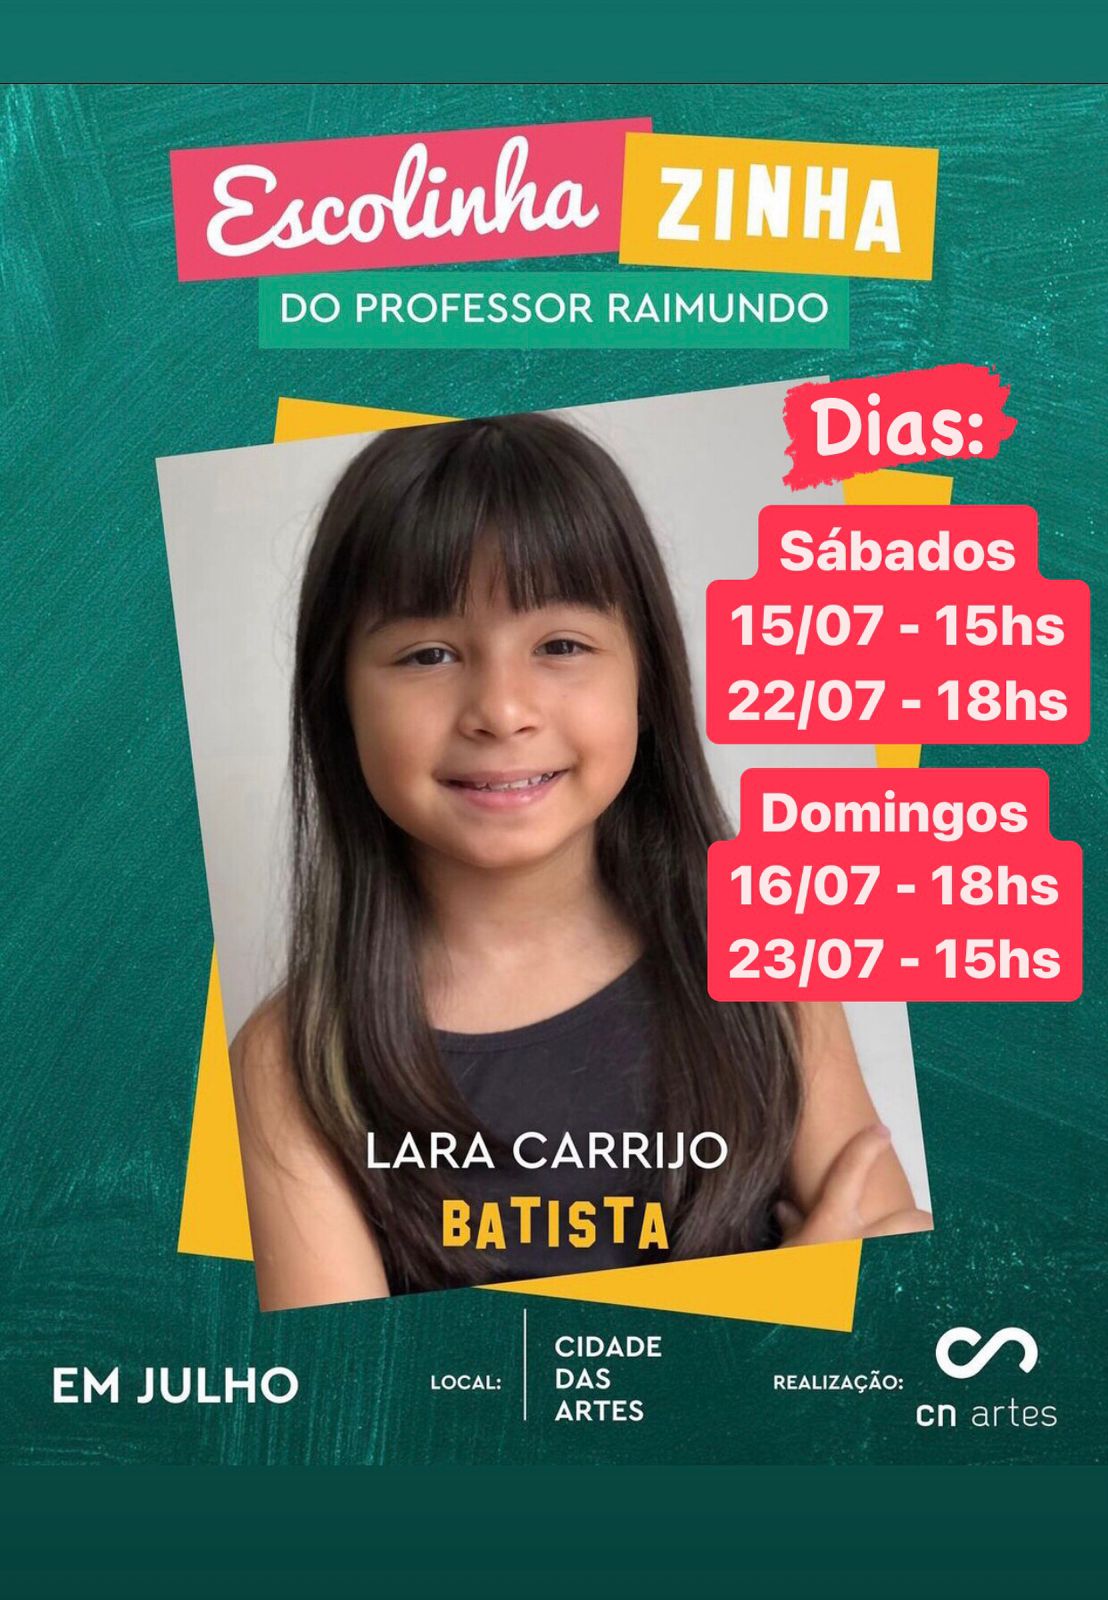 Lara Carrijo Brilha Nos Palcos Com O Personagem Seu Batista Em 'A Escolhazinha Do Professor Raimundo